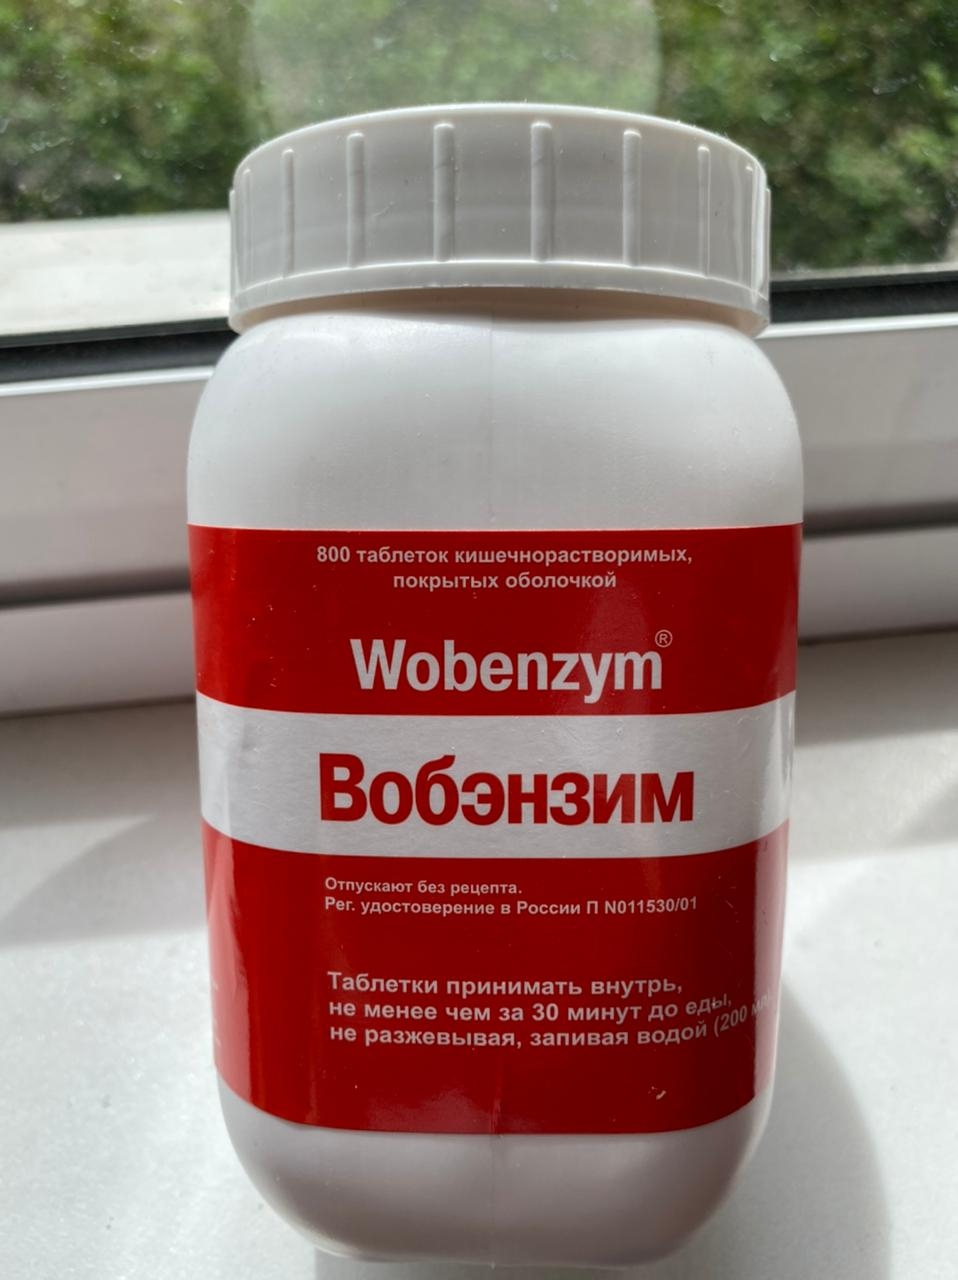 Wobenzym (Вобэнзим) - Иммунитет поднимается отлично